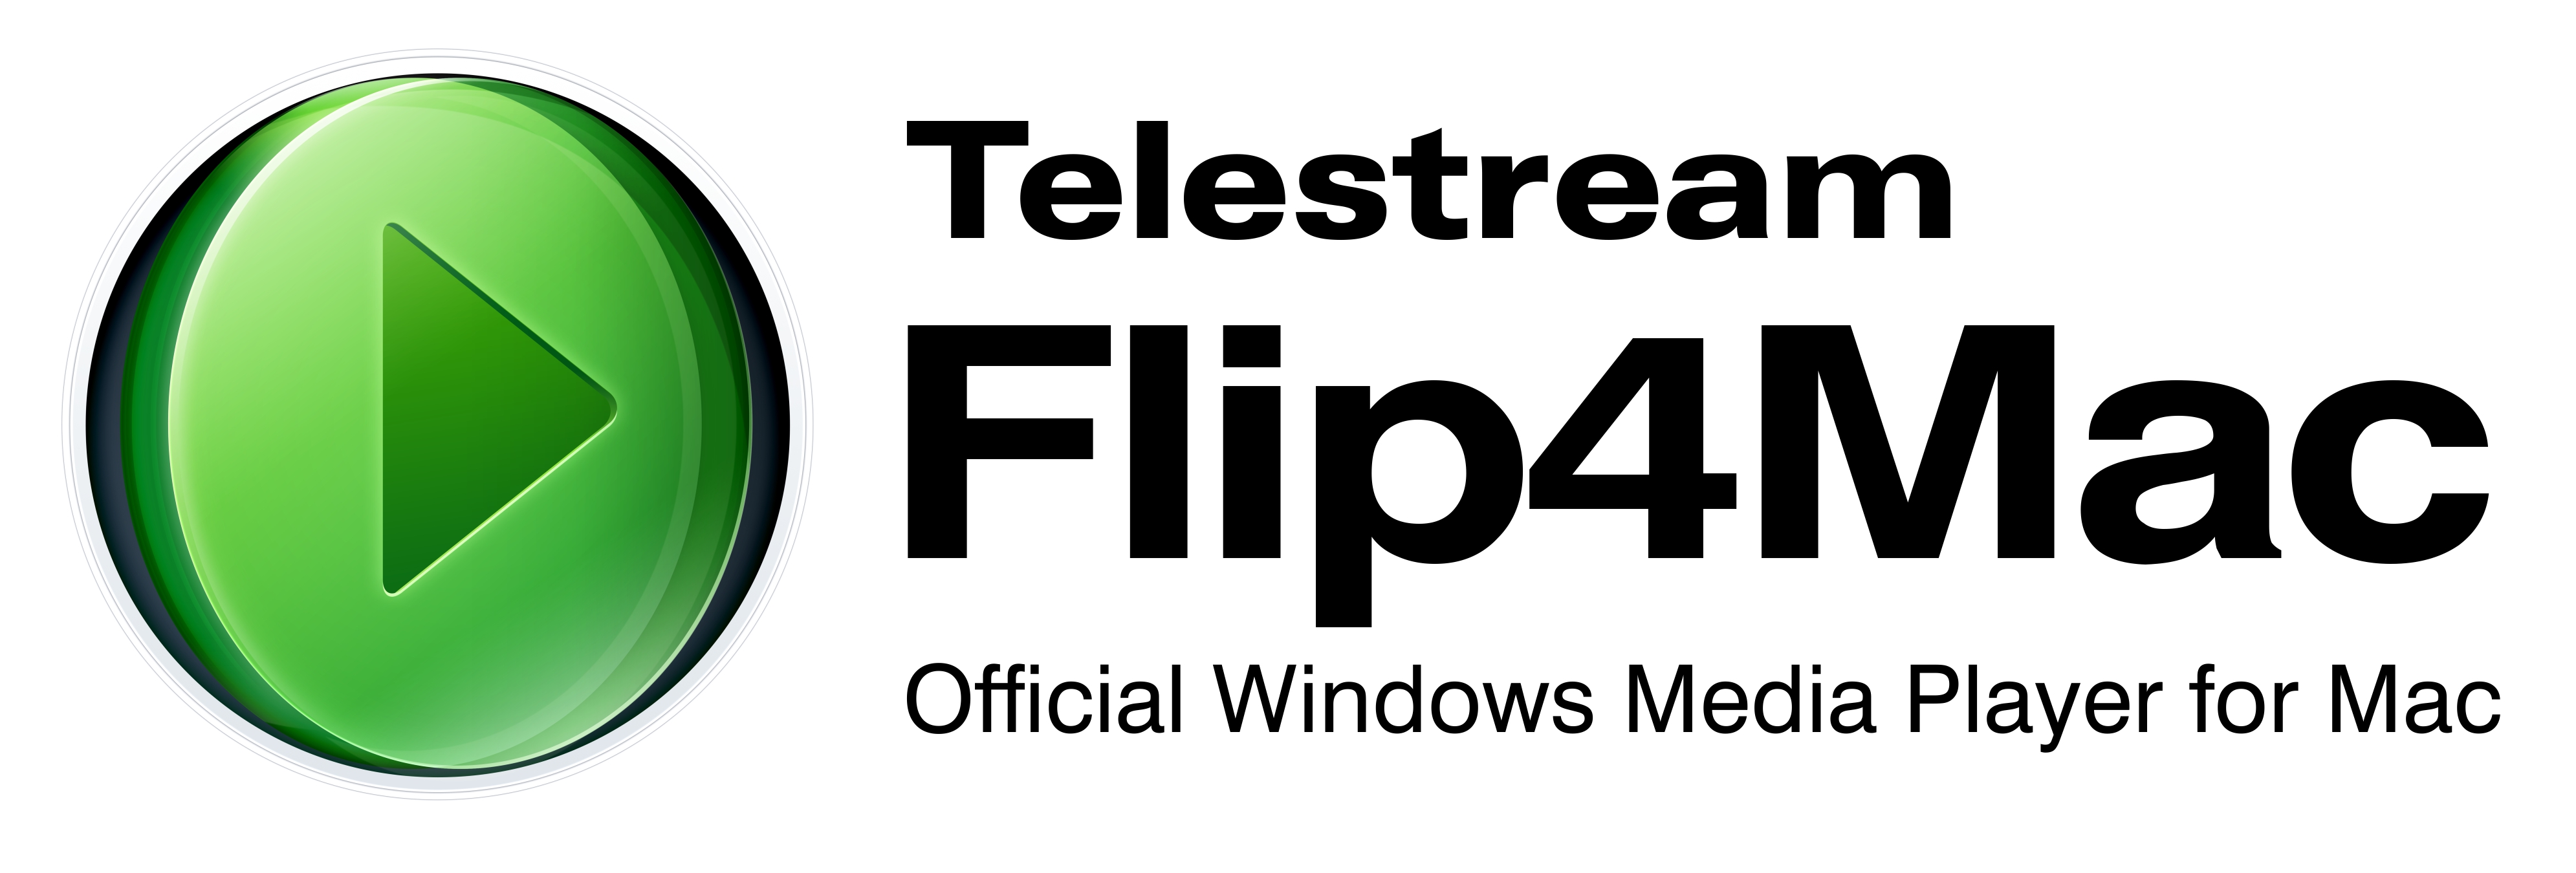 Telestream Flip4Mac Logo photo - 1